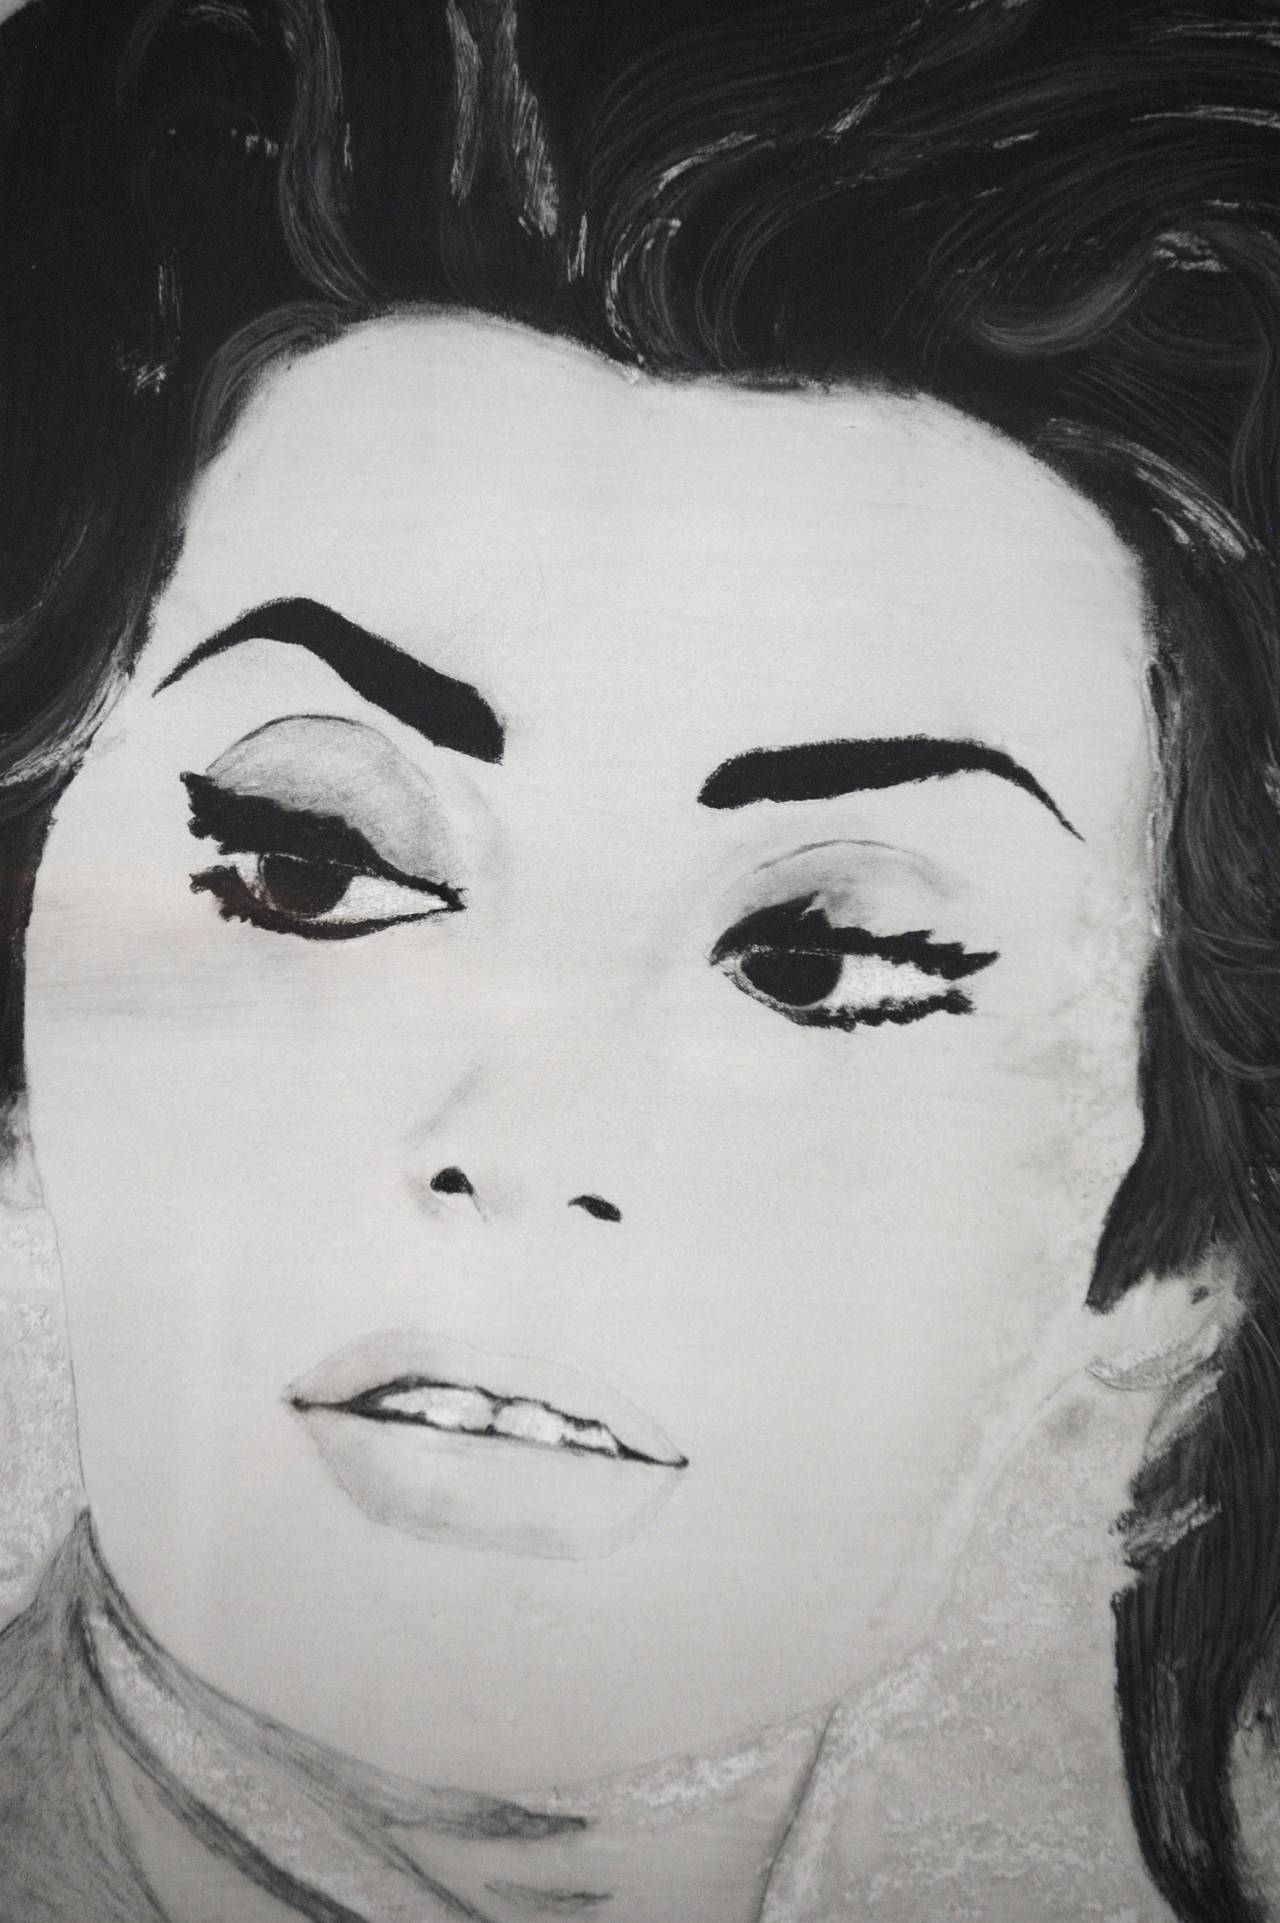 Sophia Loren - Pop Art Mixed Media Art by Jack Graves III